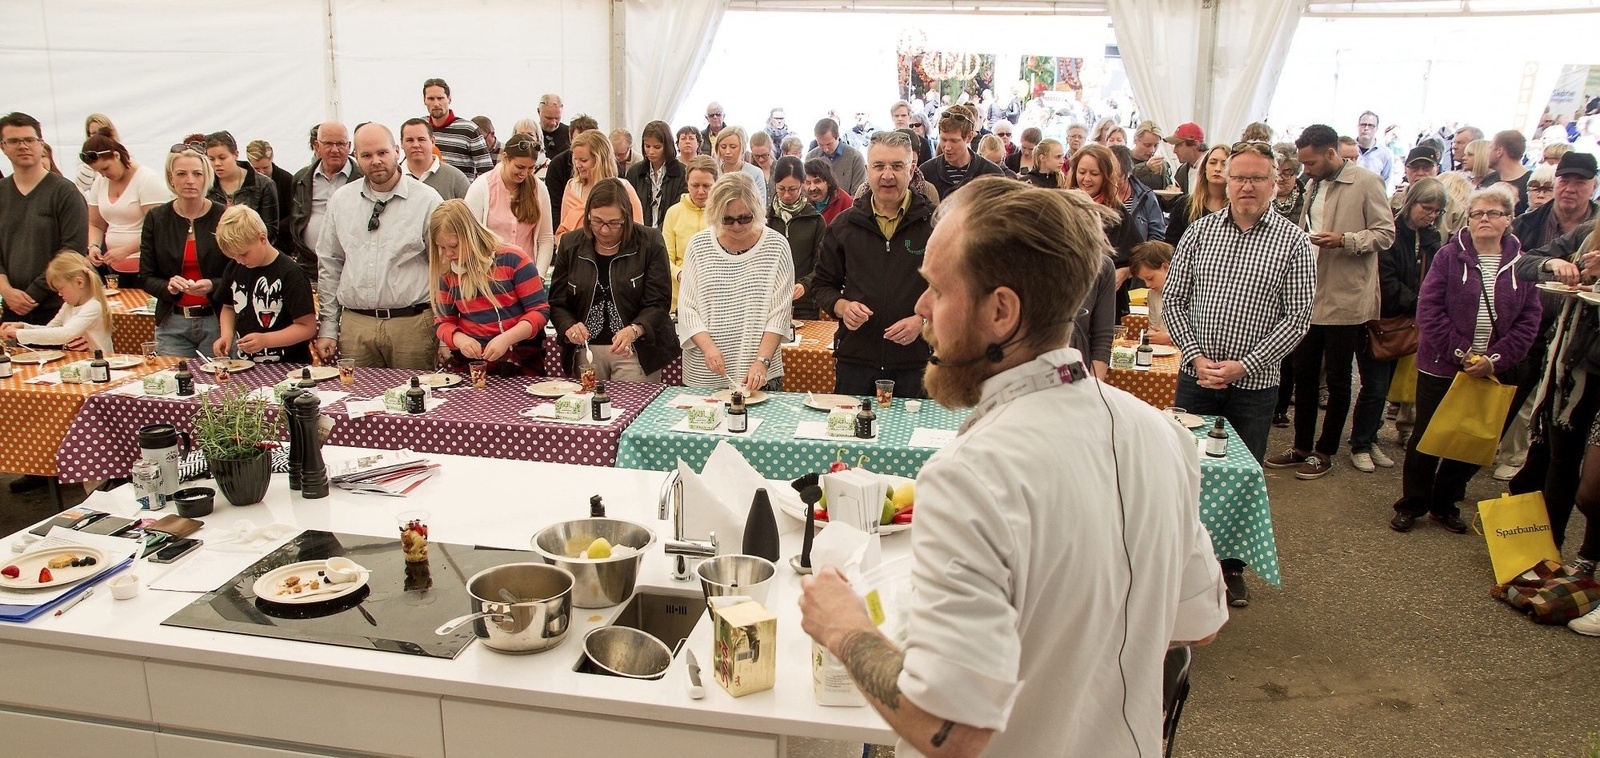 Matintresserade gäster i Brösarp under en tidigare upplaga av Skånes matfestival. ARKIVBILD